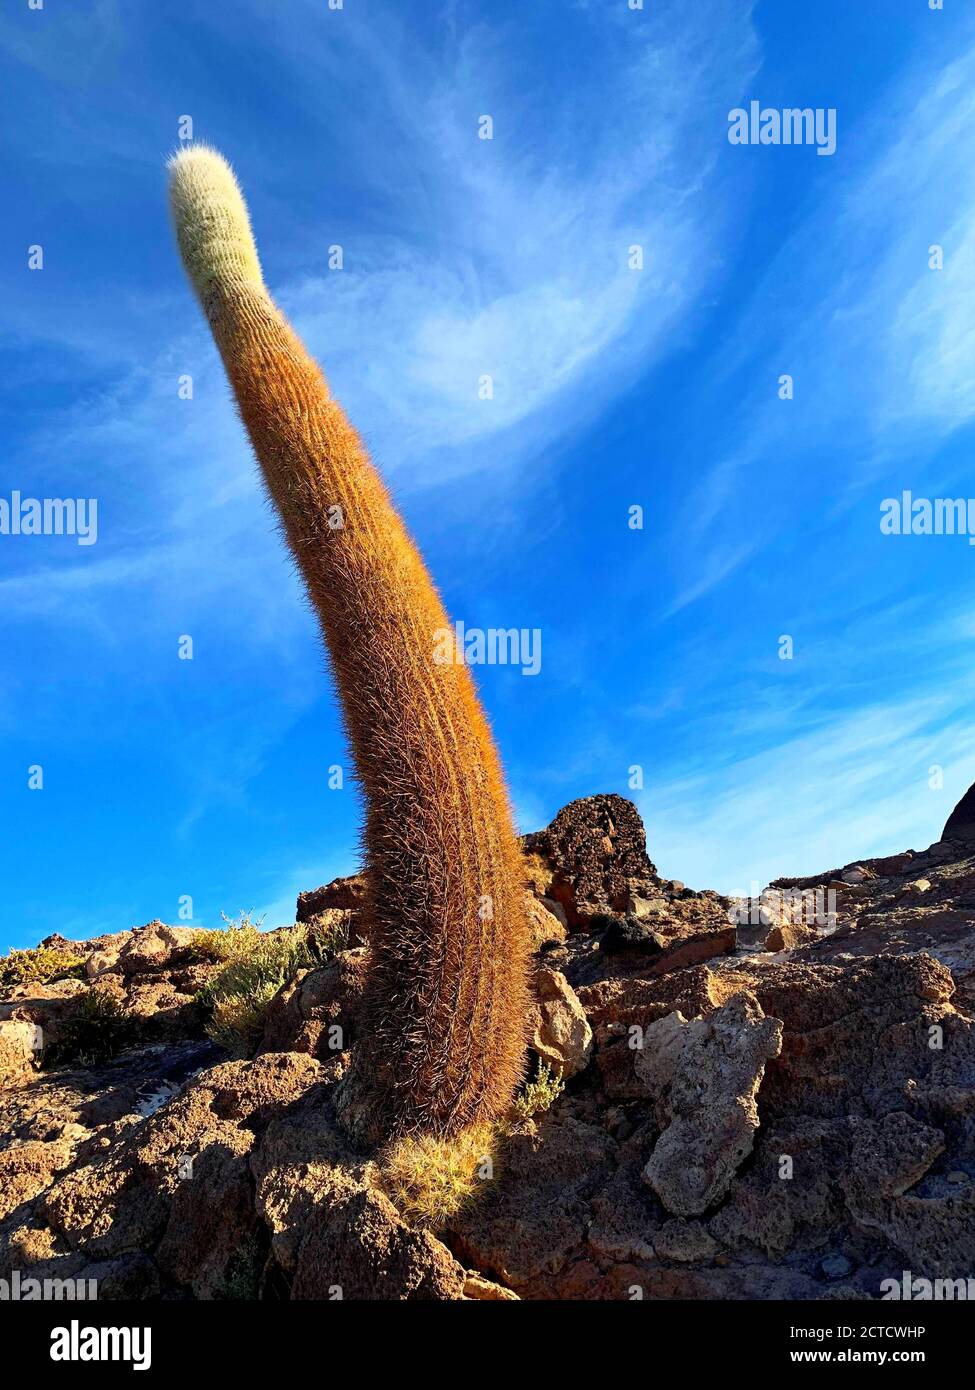 Riesiger Kaktus auf der Insel Isla Incahuasi. Aride Wüste Salar de Uyuni, Bolivien. Tropische gigantische Pflanzenkakteen. Trichocereus pasacana. Exotische Flora. Stockfoto